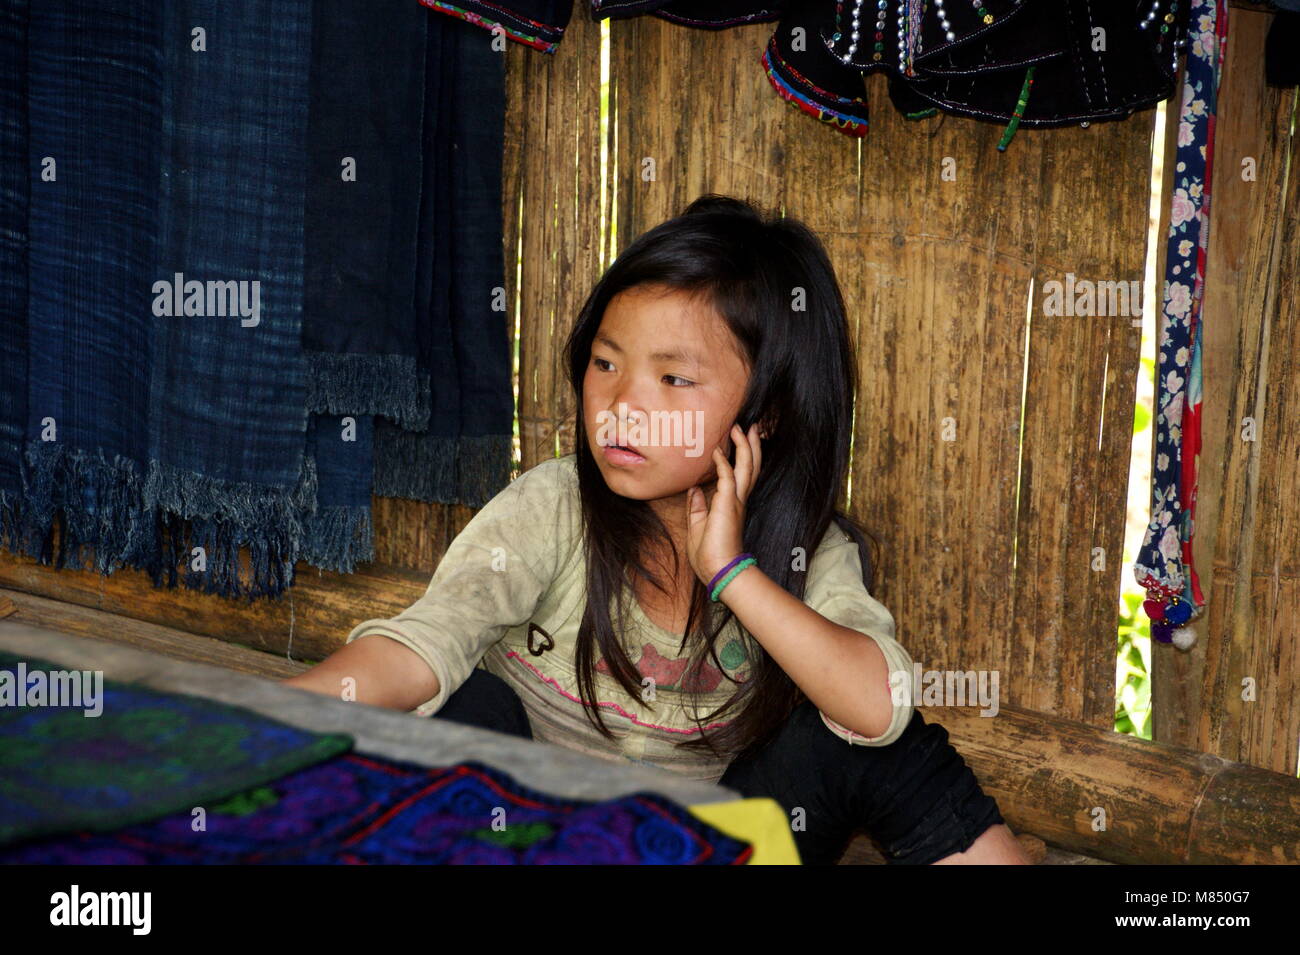 Ein schönes Vietnamesisches Mädchen, ein Vertreter einer kleinen ethnischen Gruppe. Nationale Minderheiten in Sapa. Sapa, Vietnam, Lao Cai Provinz Asien. 5. Mai 20. Stockfoto